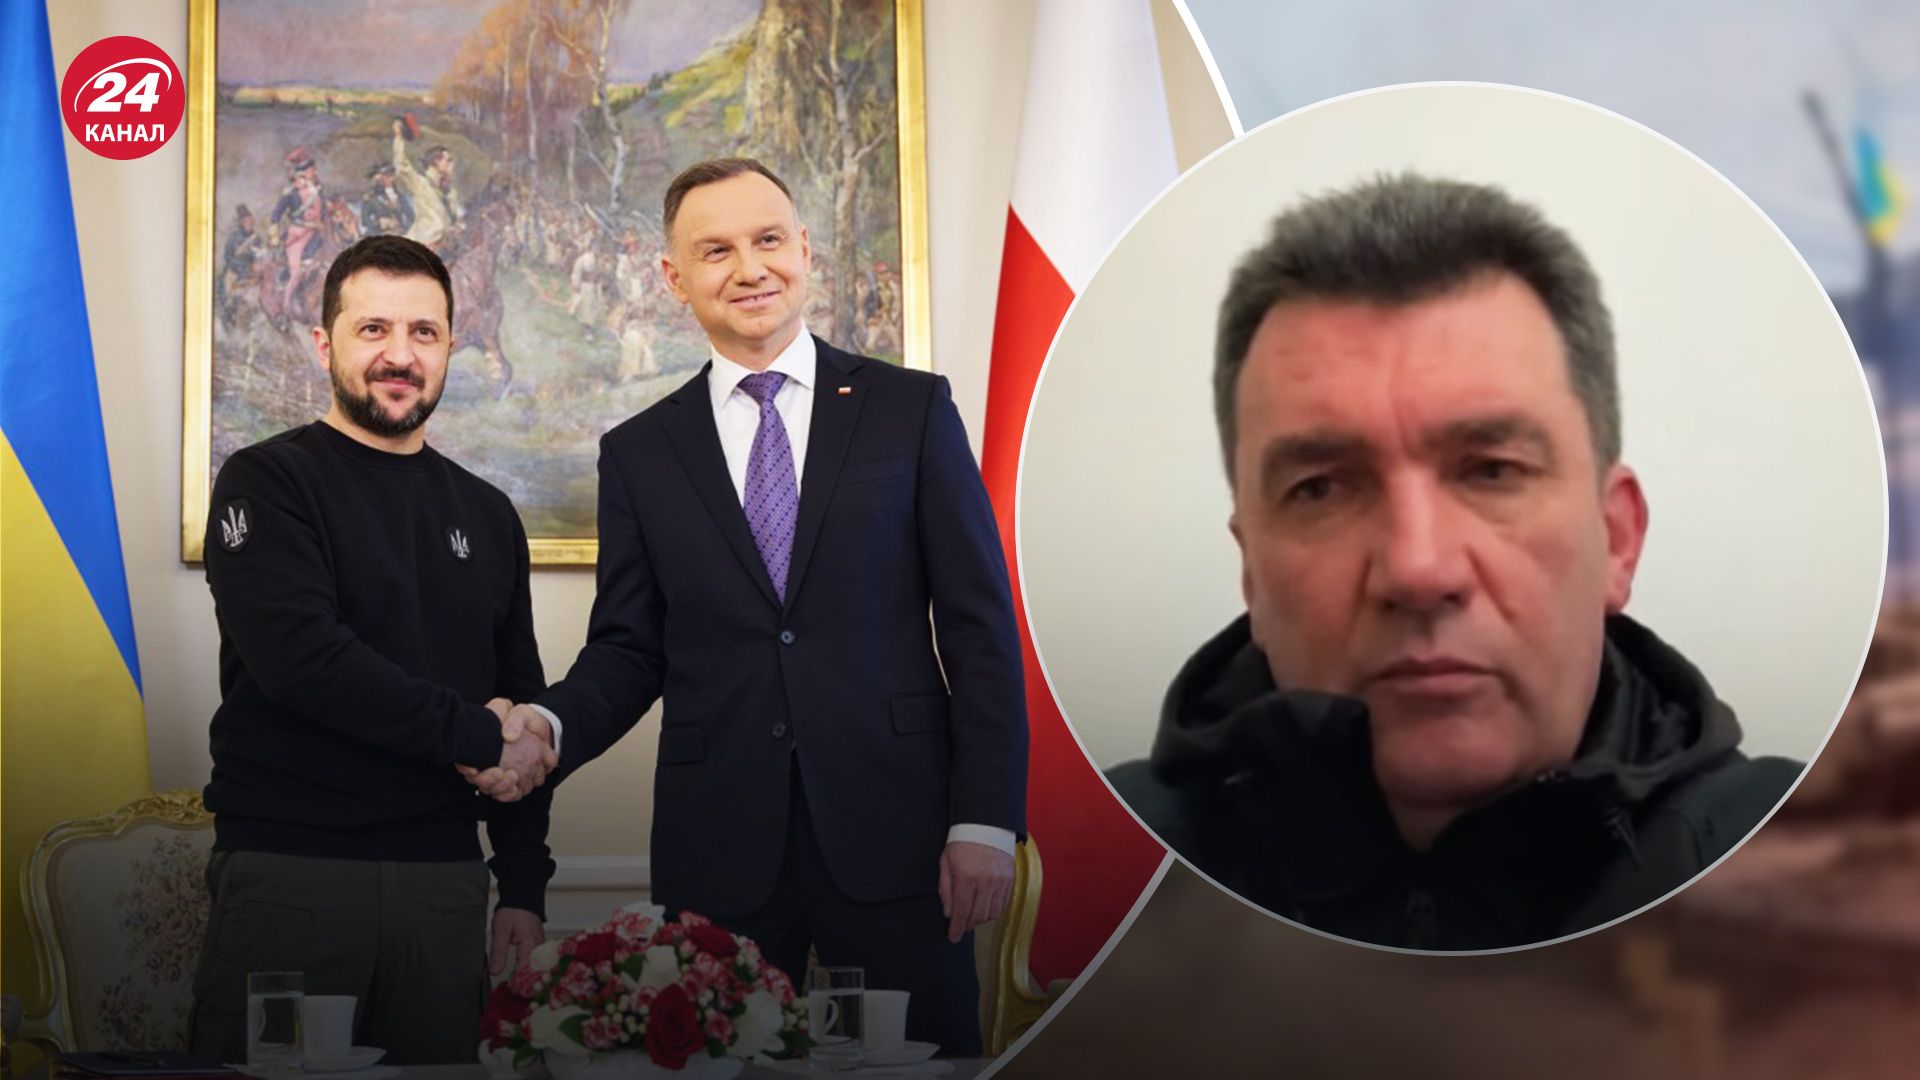 Данилов прокомментировал визит Зеленского в Польшу